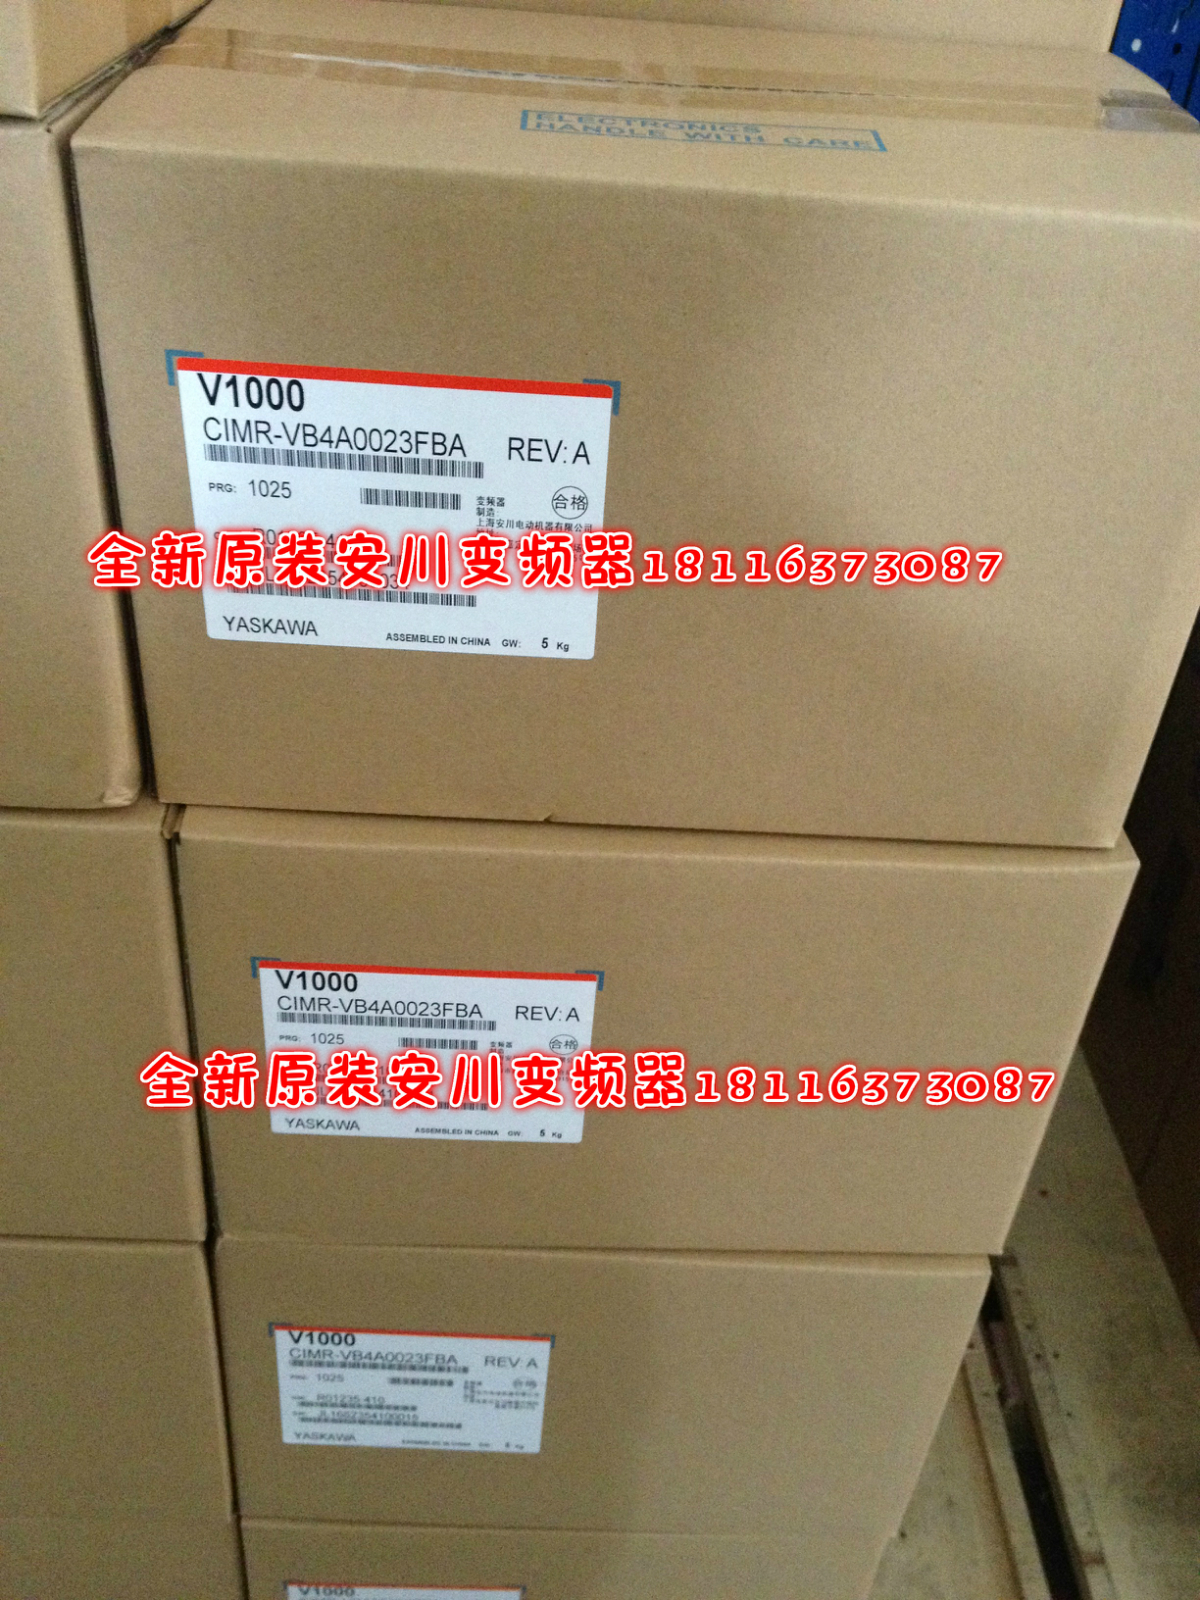 Anchuan Inverter New Original CIMR-VB4A0023FBA V1000 7.5kW 3 Phase 380V